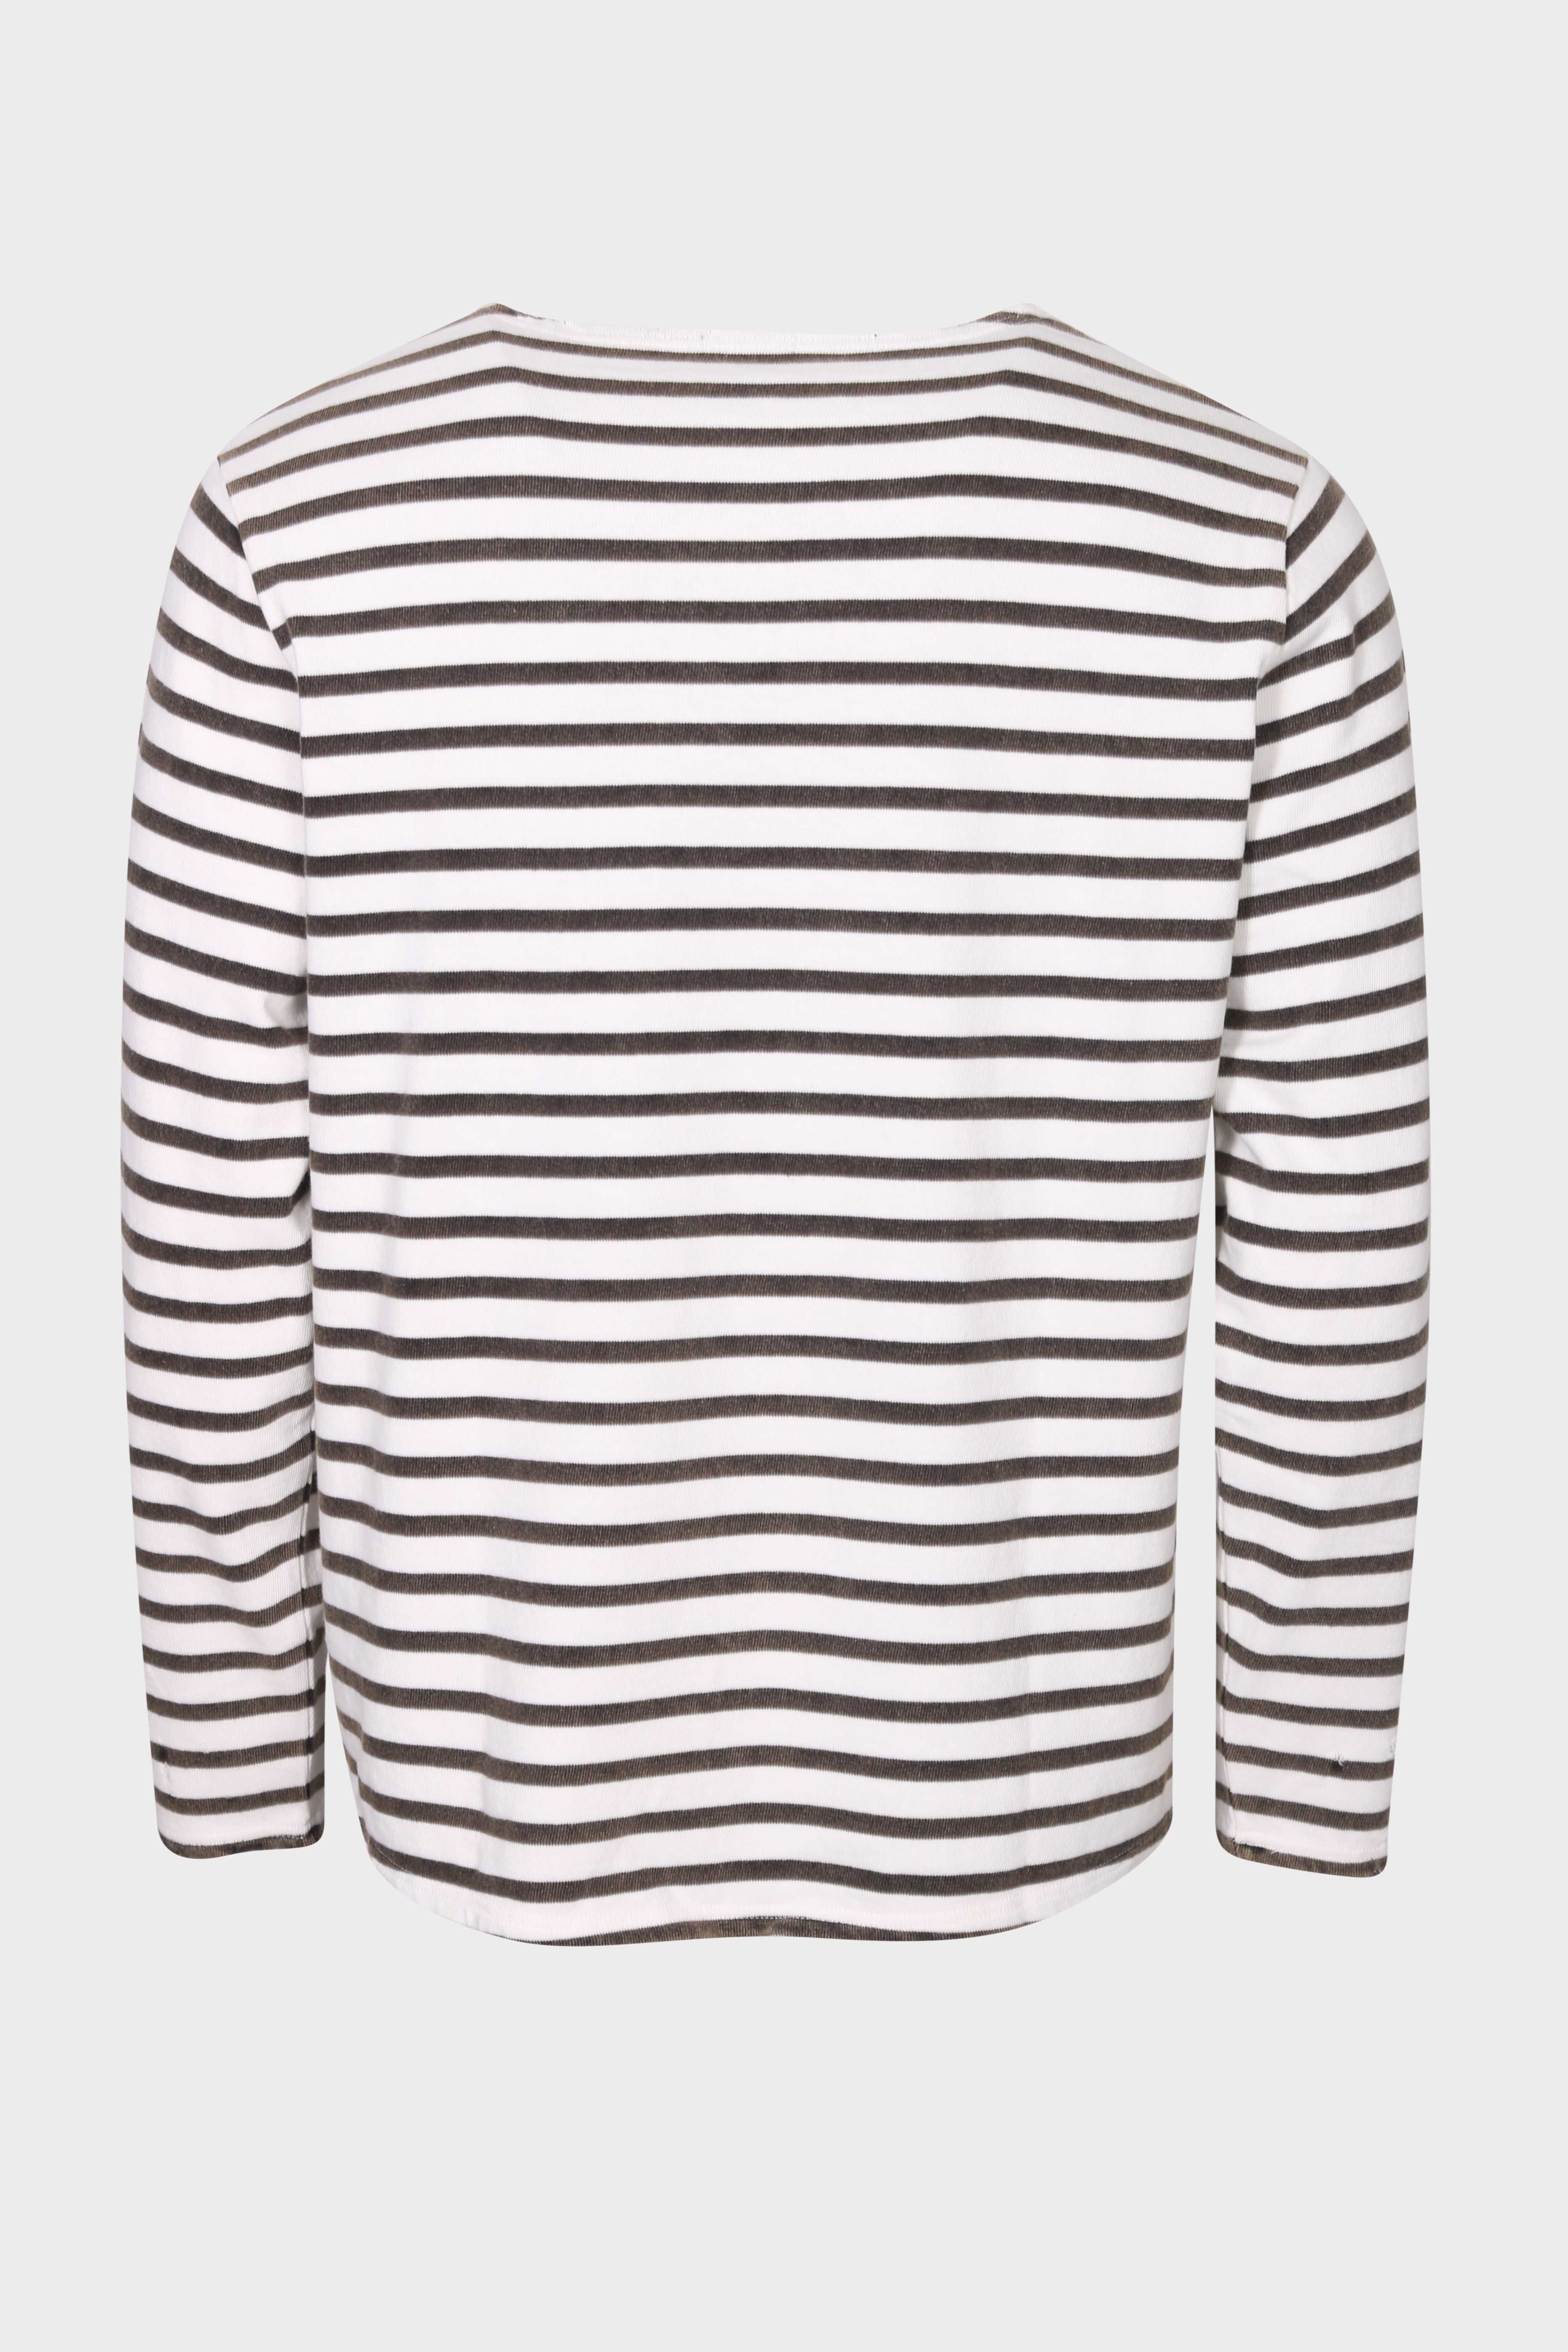 R13 Breton Sweater in Black/Ecru Stripe M